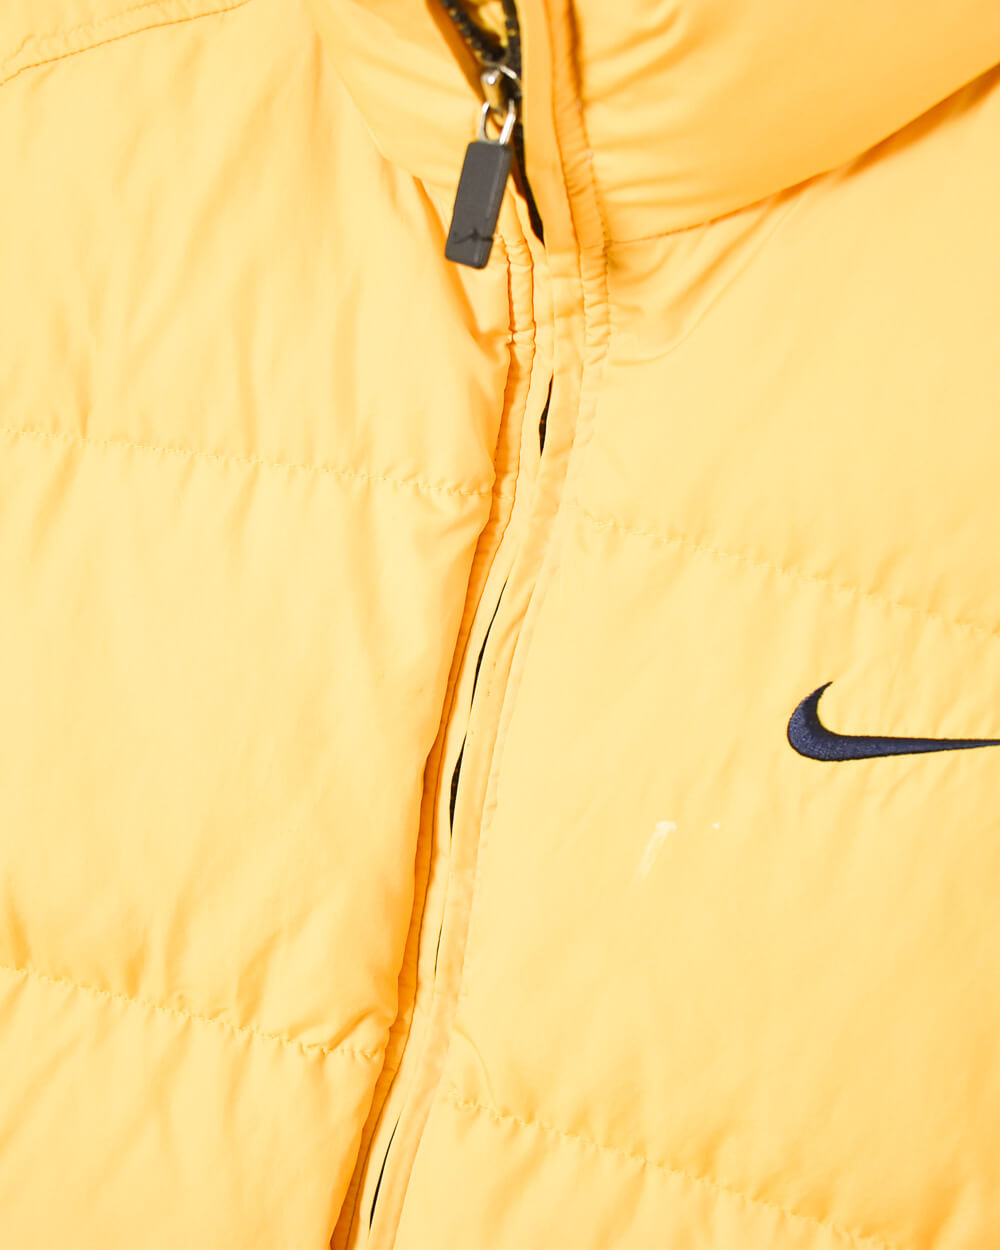 Yellow Nike Puffer Jacket - Small